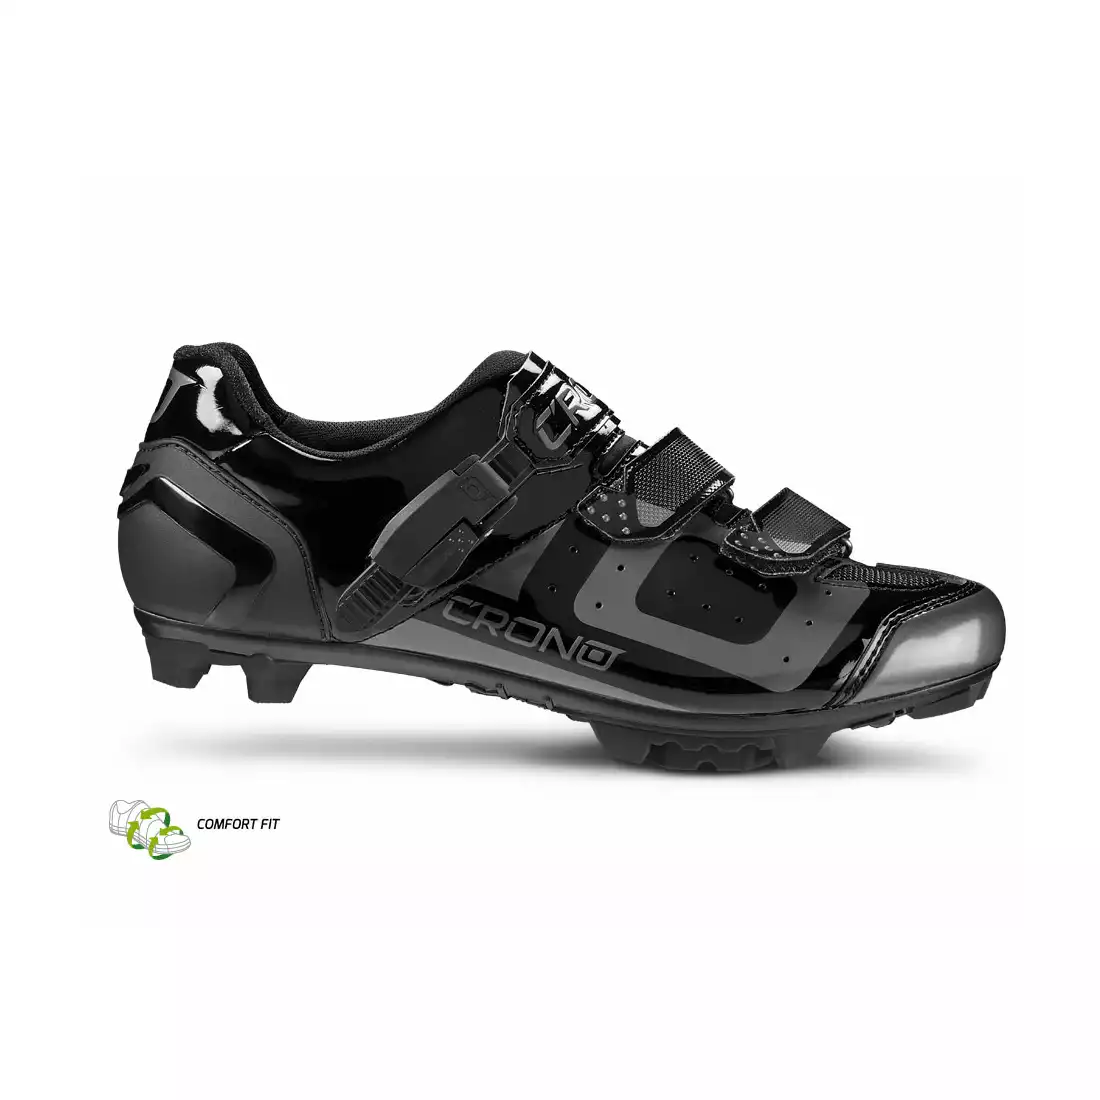 CRONO CX3 nylon - buty rowerowe MTB, czarne